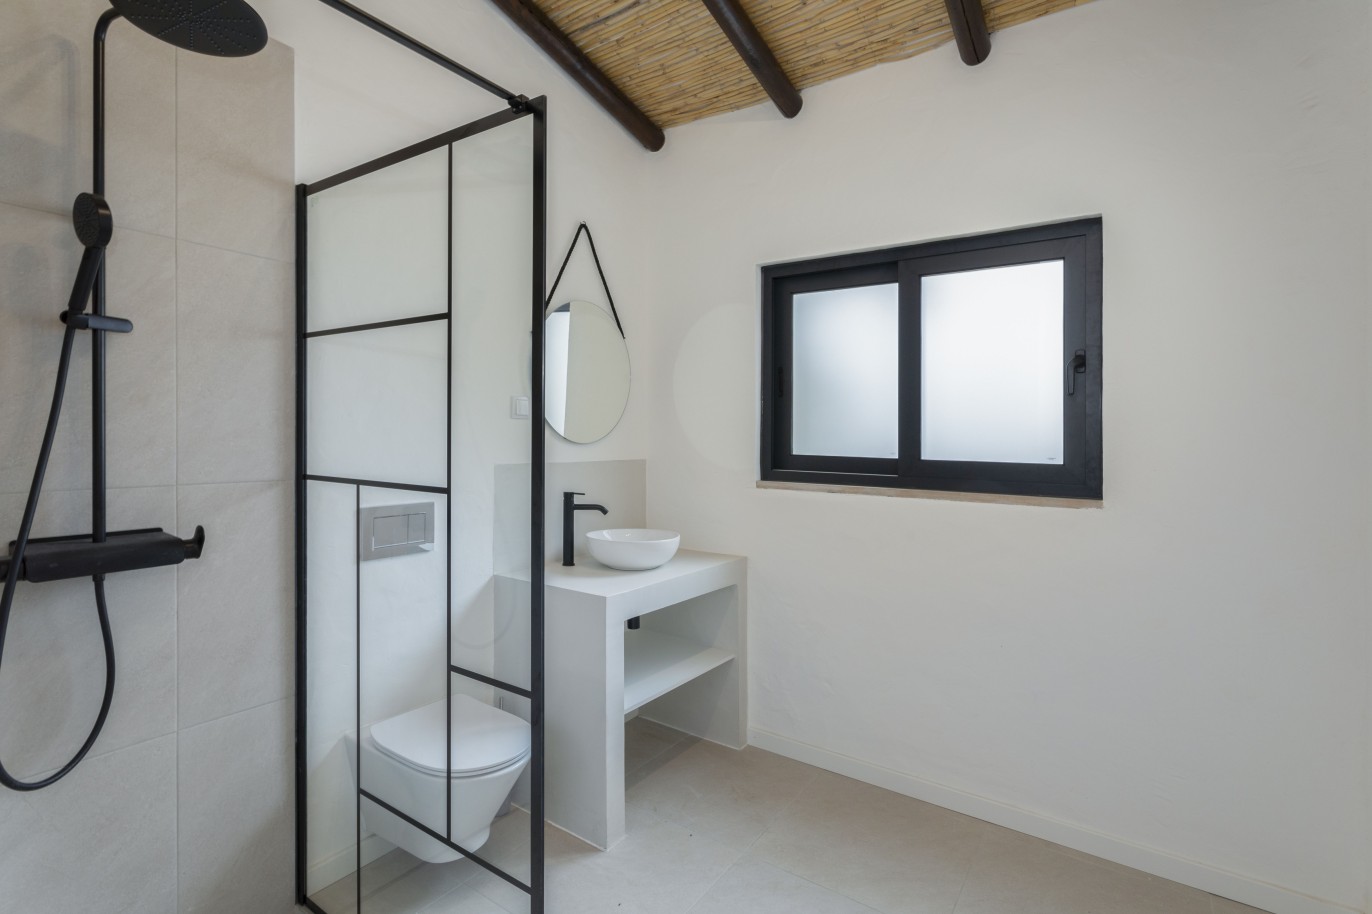 3 bedroom villa with sea view and pool, for sale in Santa Barbara, Algarve_245058